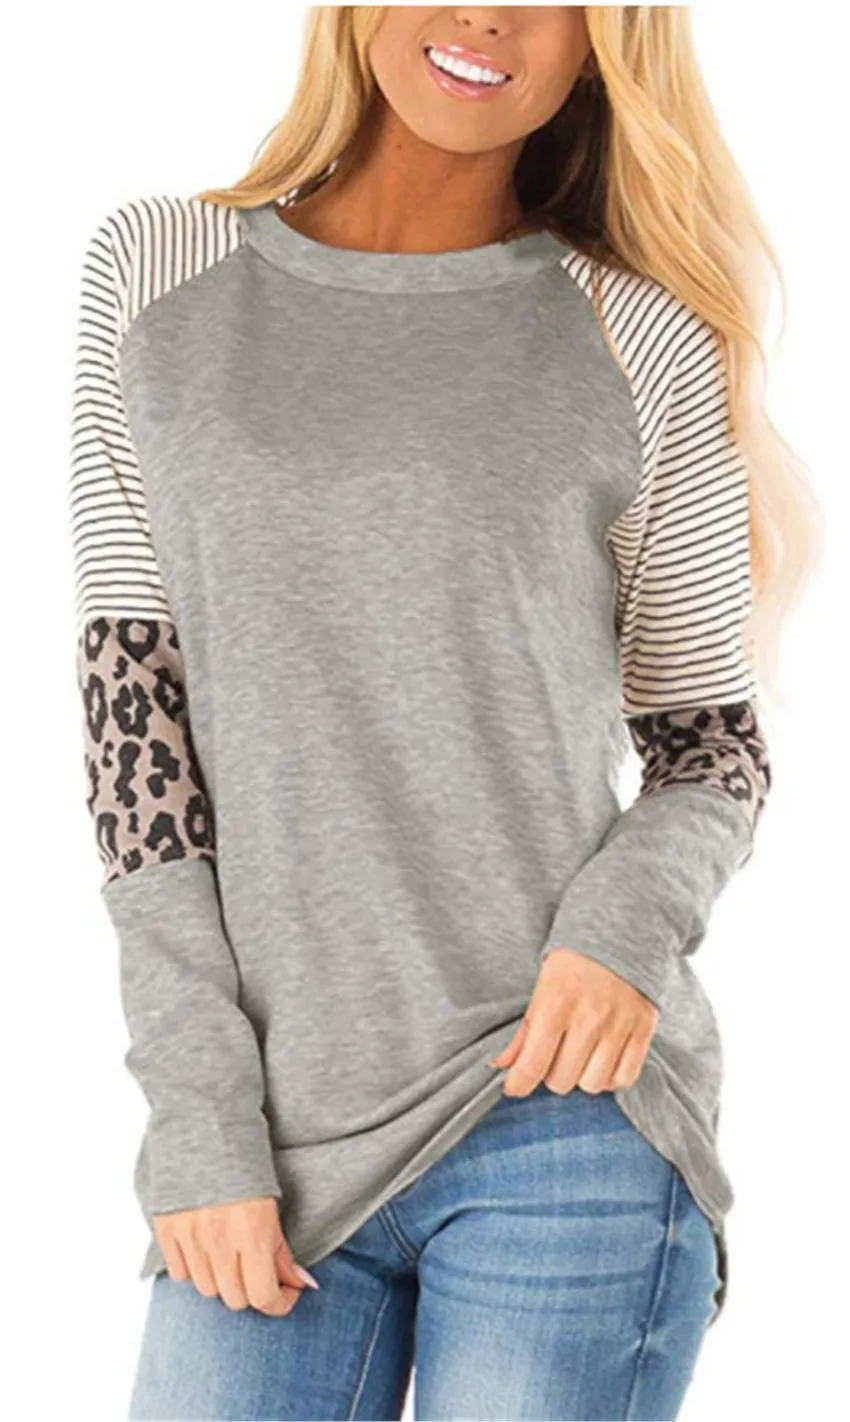 Женский топ с леопардовой строчкой Свободный Топ футболка длинным рукавом